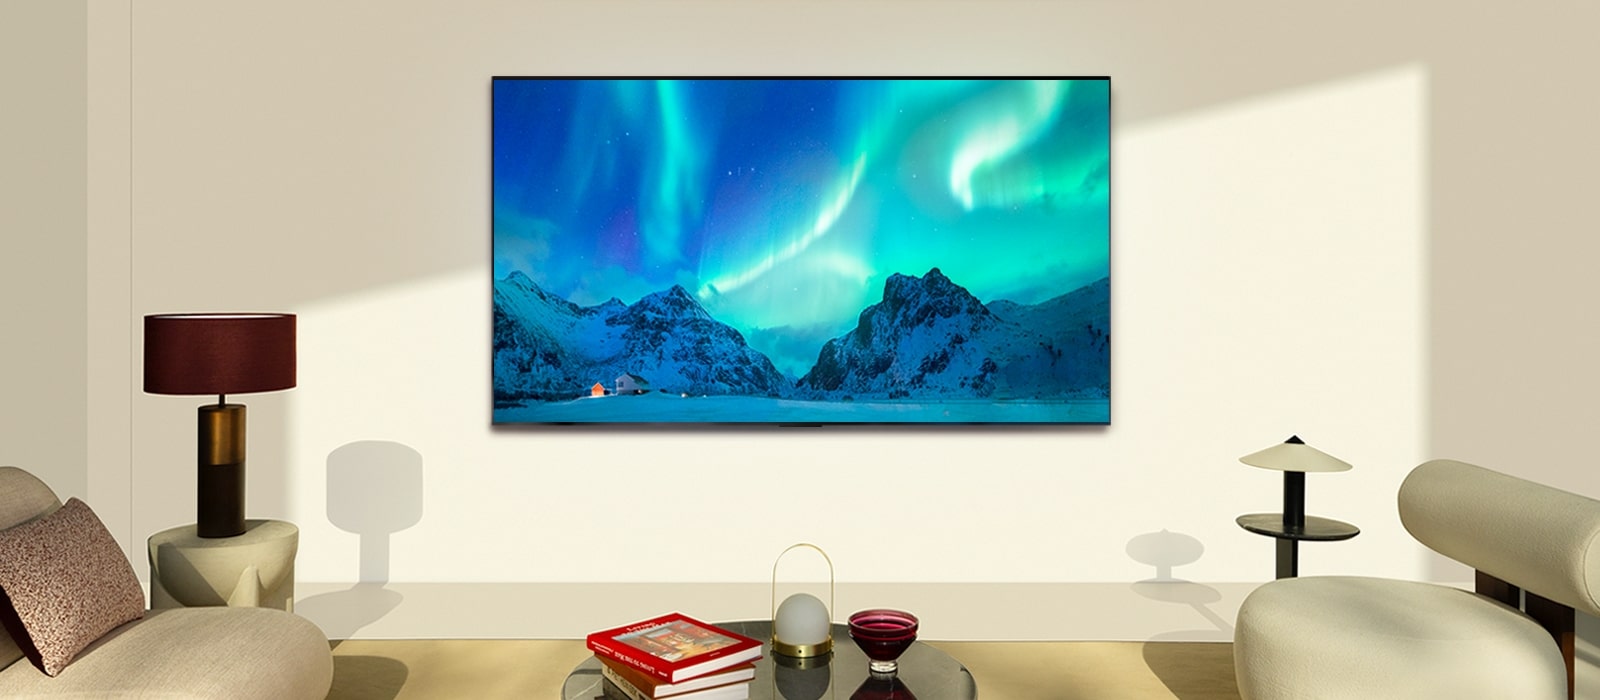 Le téléviseur OLED de LG dans une pièce moderne en plein jour. Des aurores boréales s’affichent à l’écran avec les niveaux de luminosité idéaux.